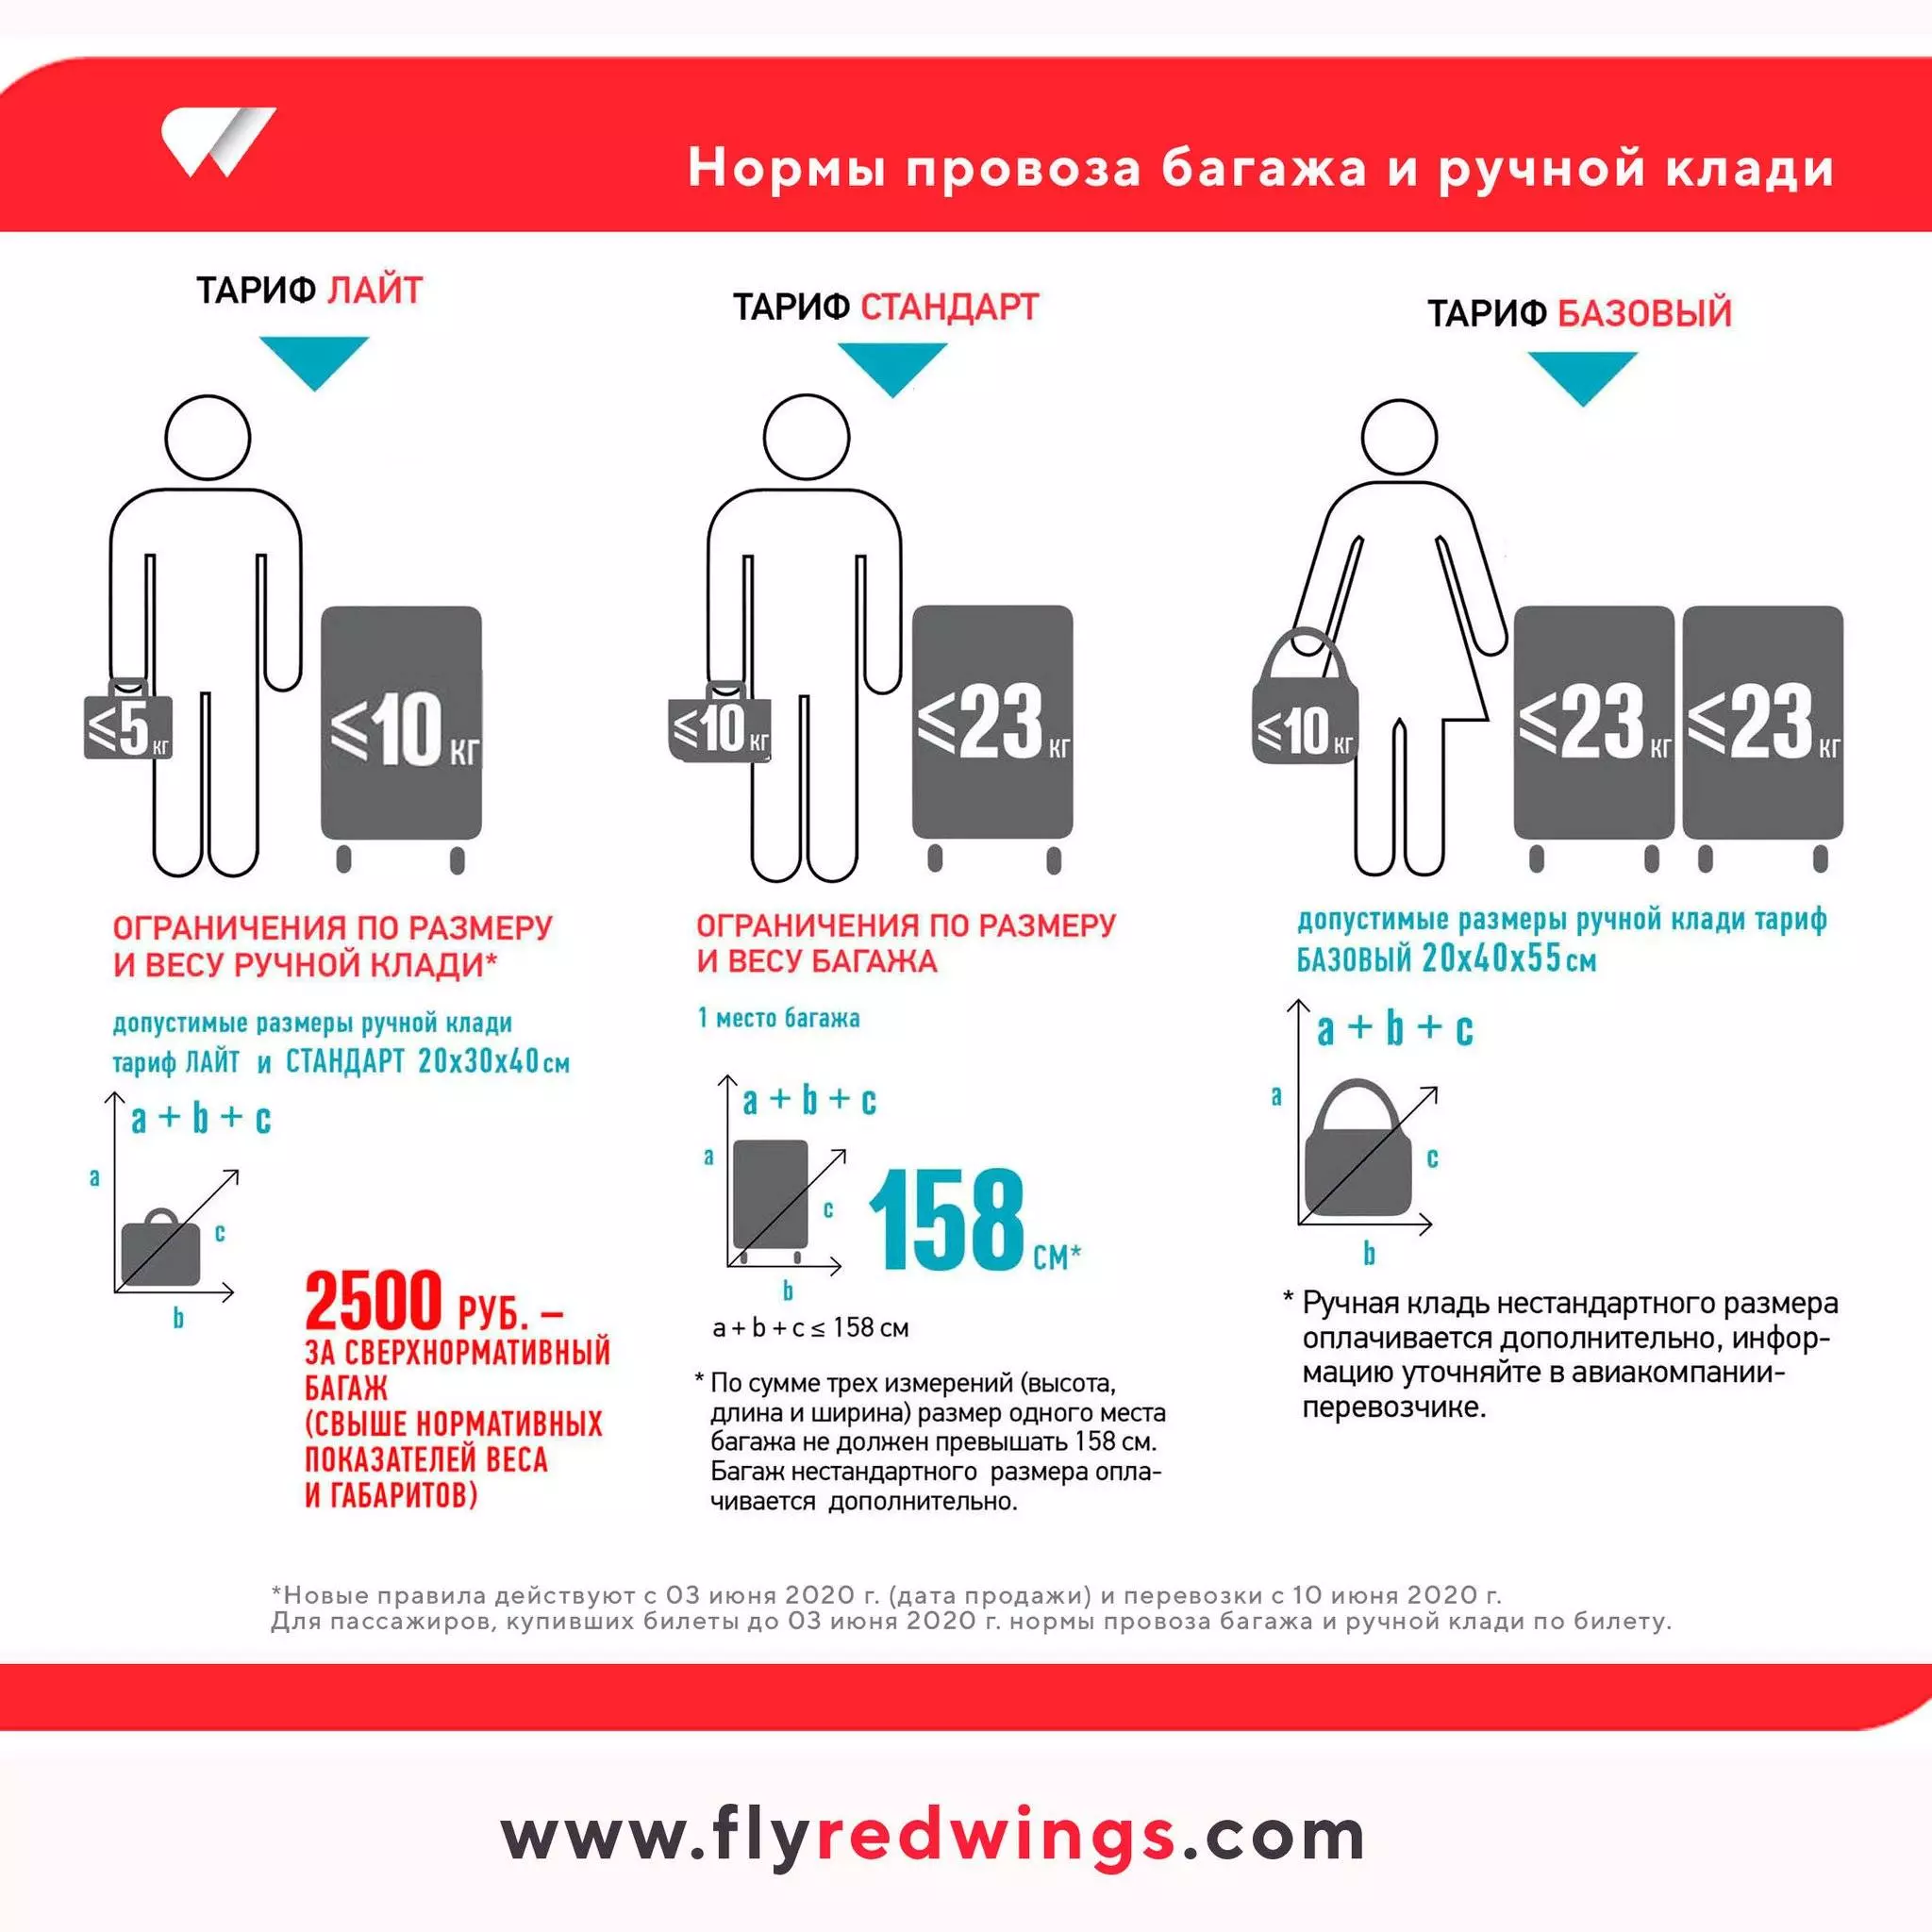 Авиакомпания якутия провоз багажа и ручной клади | авиакомпании и авиалинии россии и мира